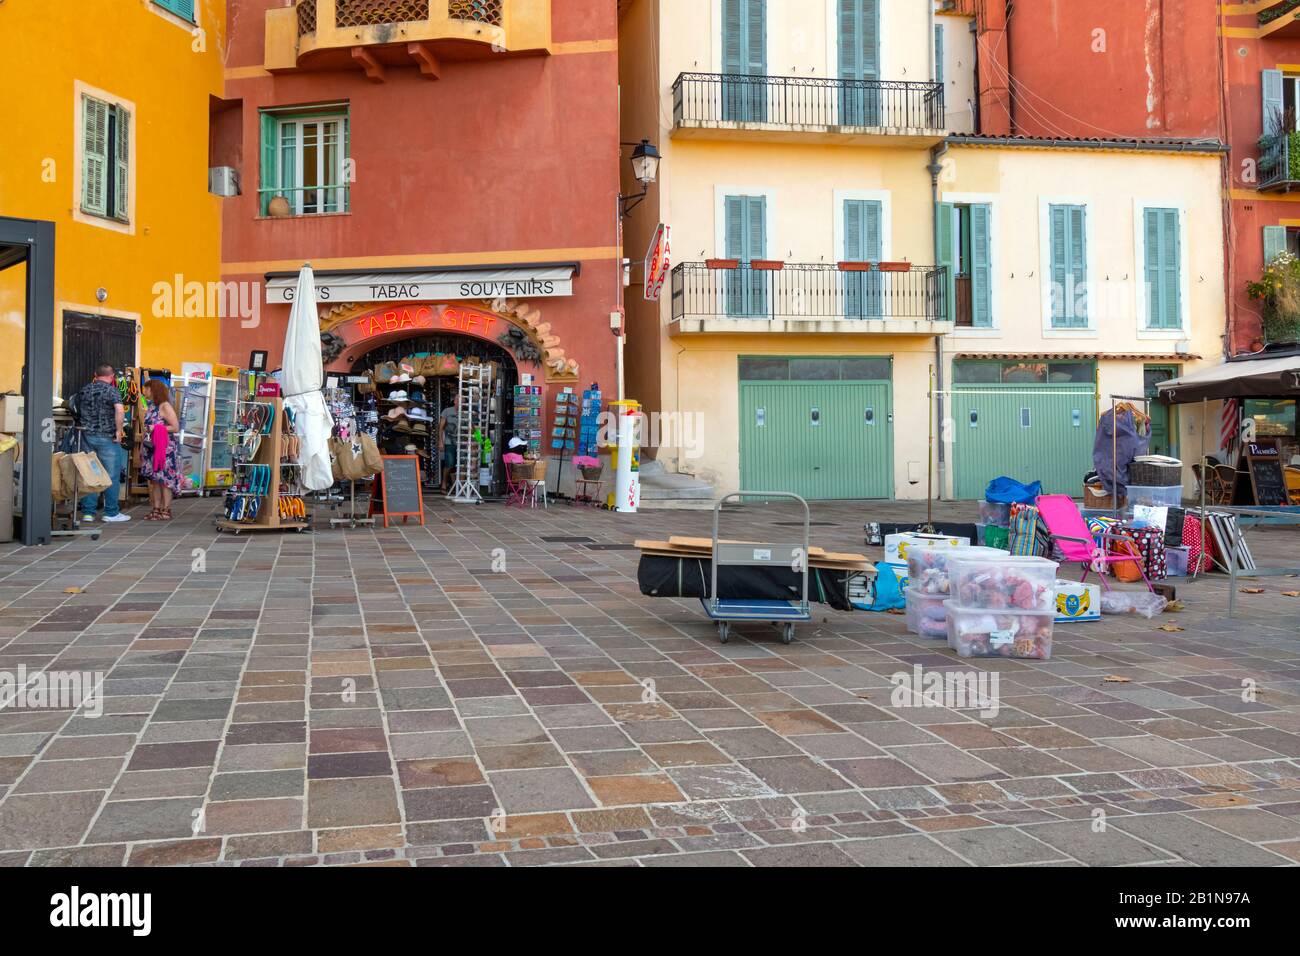 Los comerciantes se ponen y empacan sus mercancías después de un mercado al aire libre en la ciudad mediterránea de Villefranche Sur Mer, Francia Foto de stock